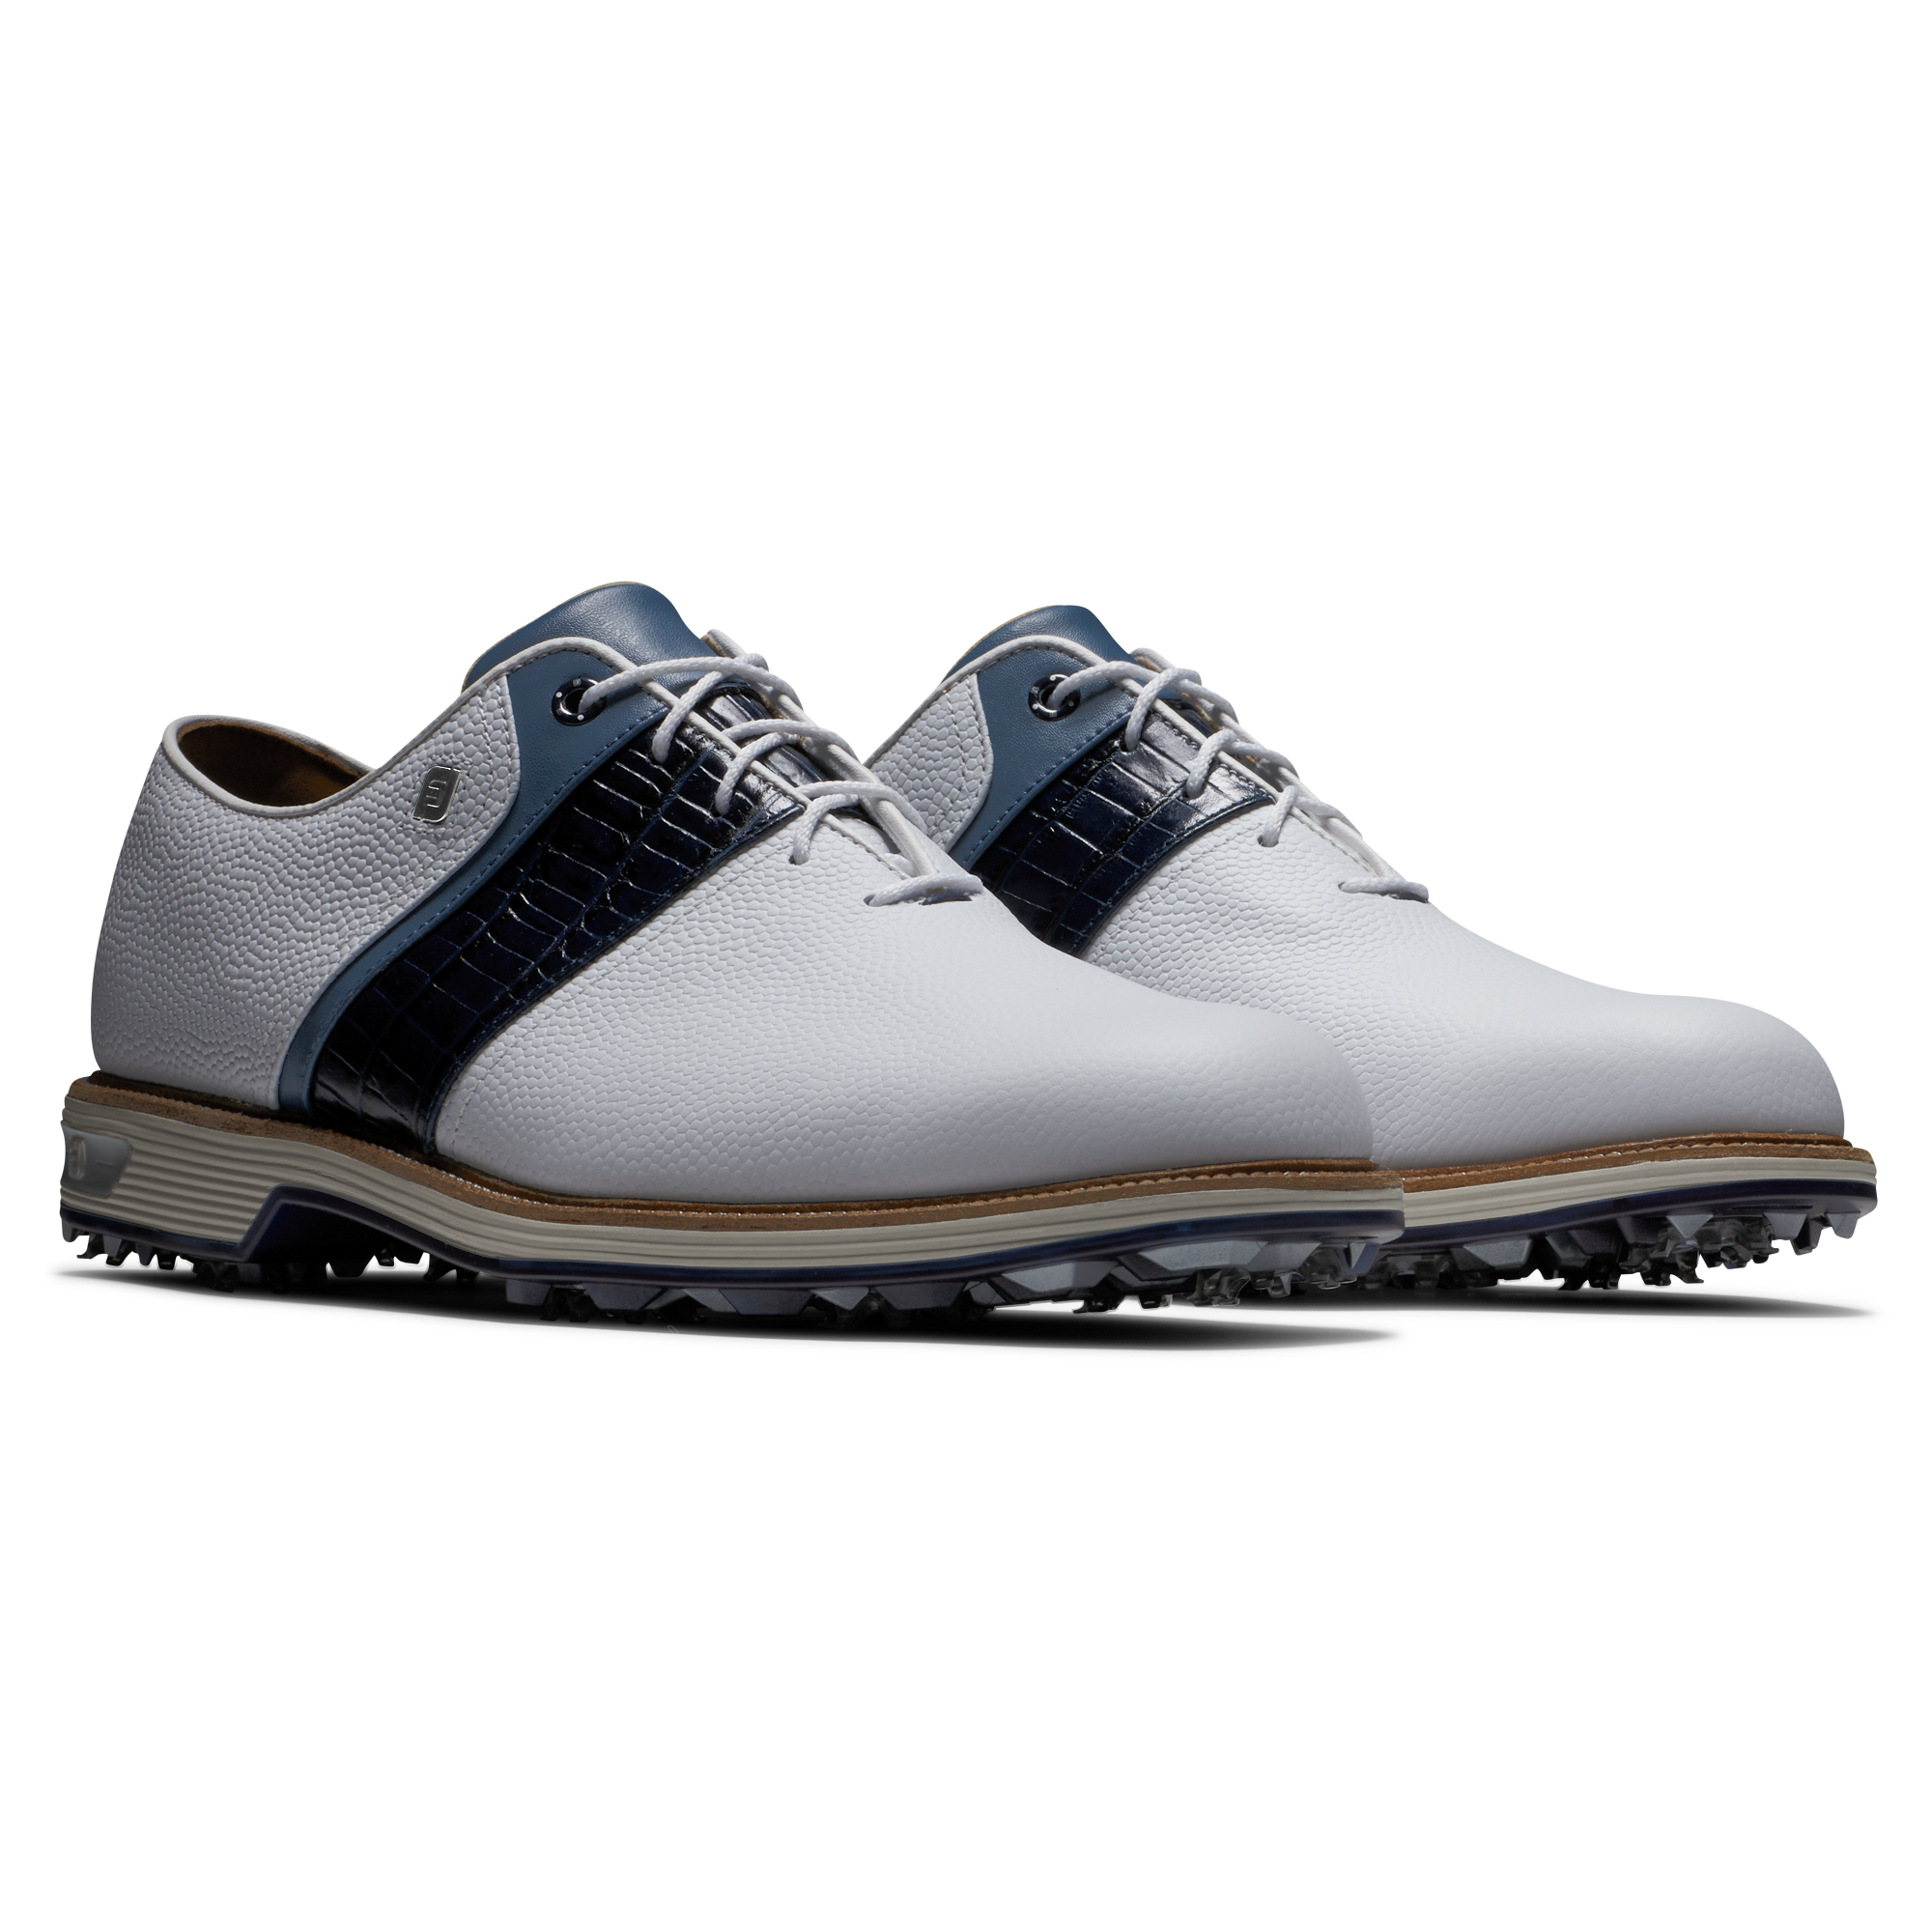 Chaussures de golf Hommes, Le #1 de la Chaussure de Golf